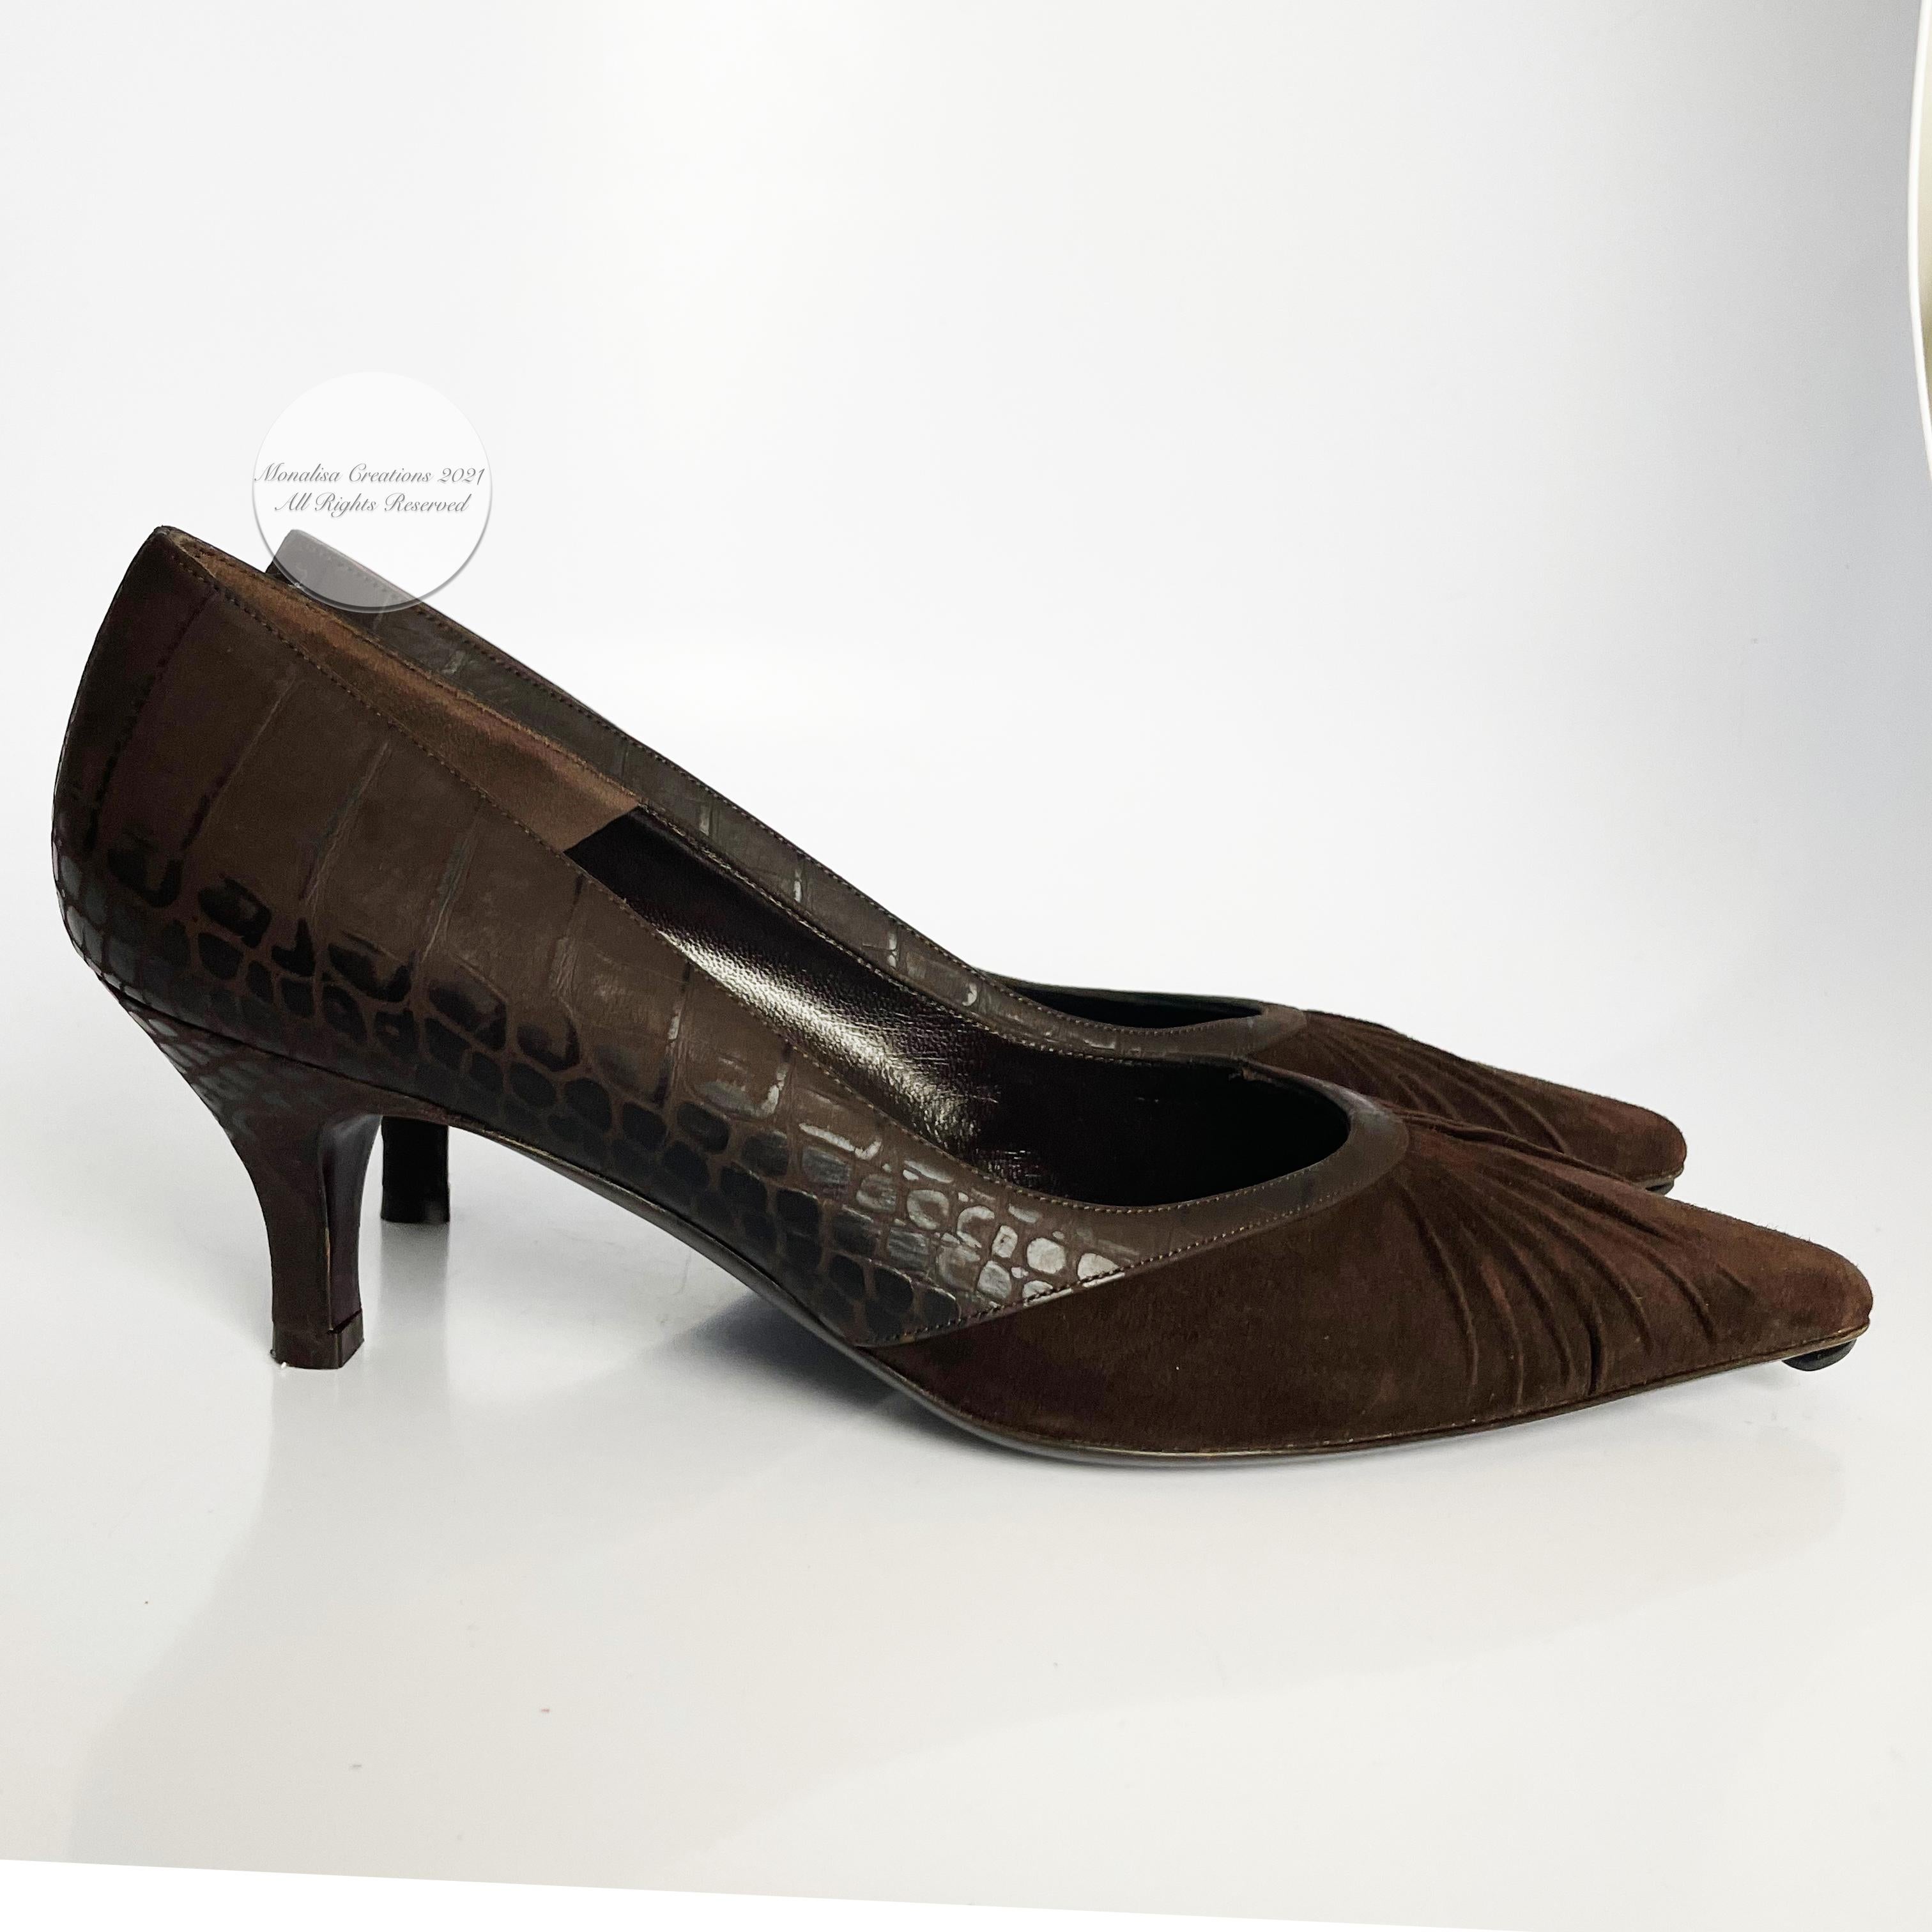 smart shoe pumps 80s 70s art deco low heel Vintage brown Italian leather kitten heels with decorative buckle suede bow